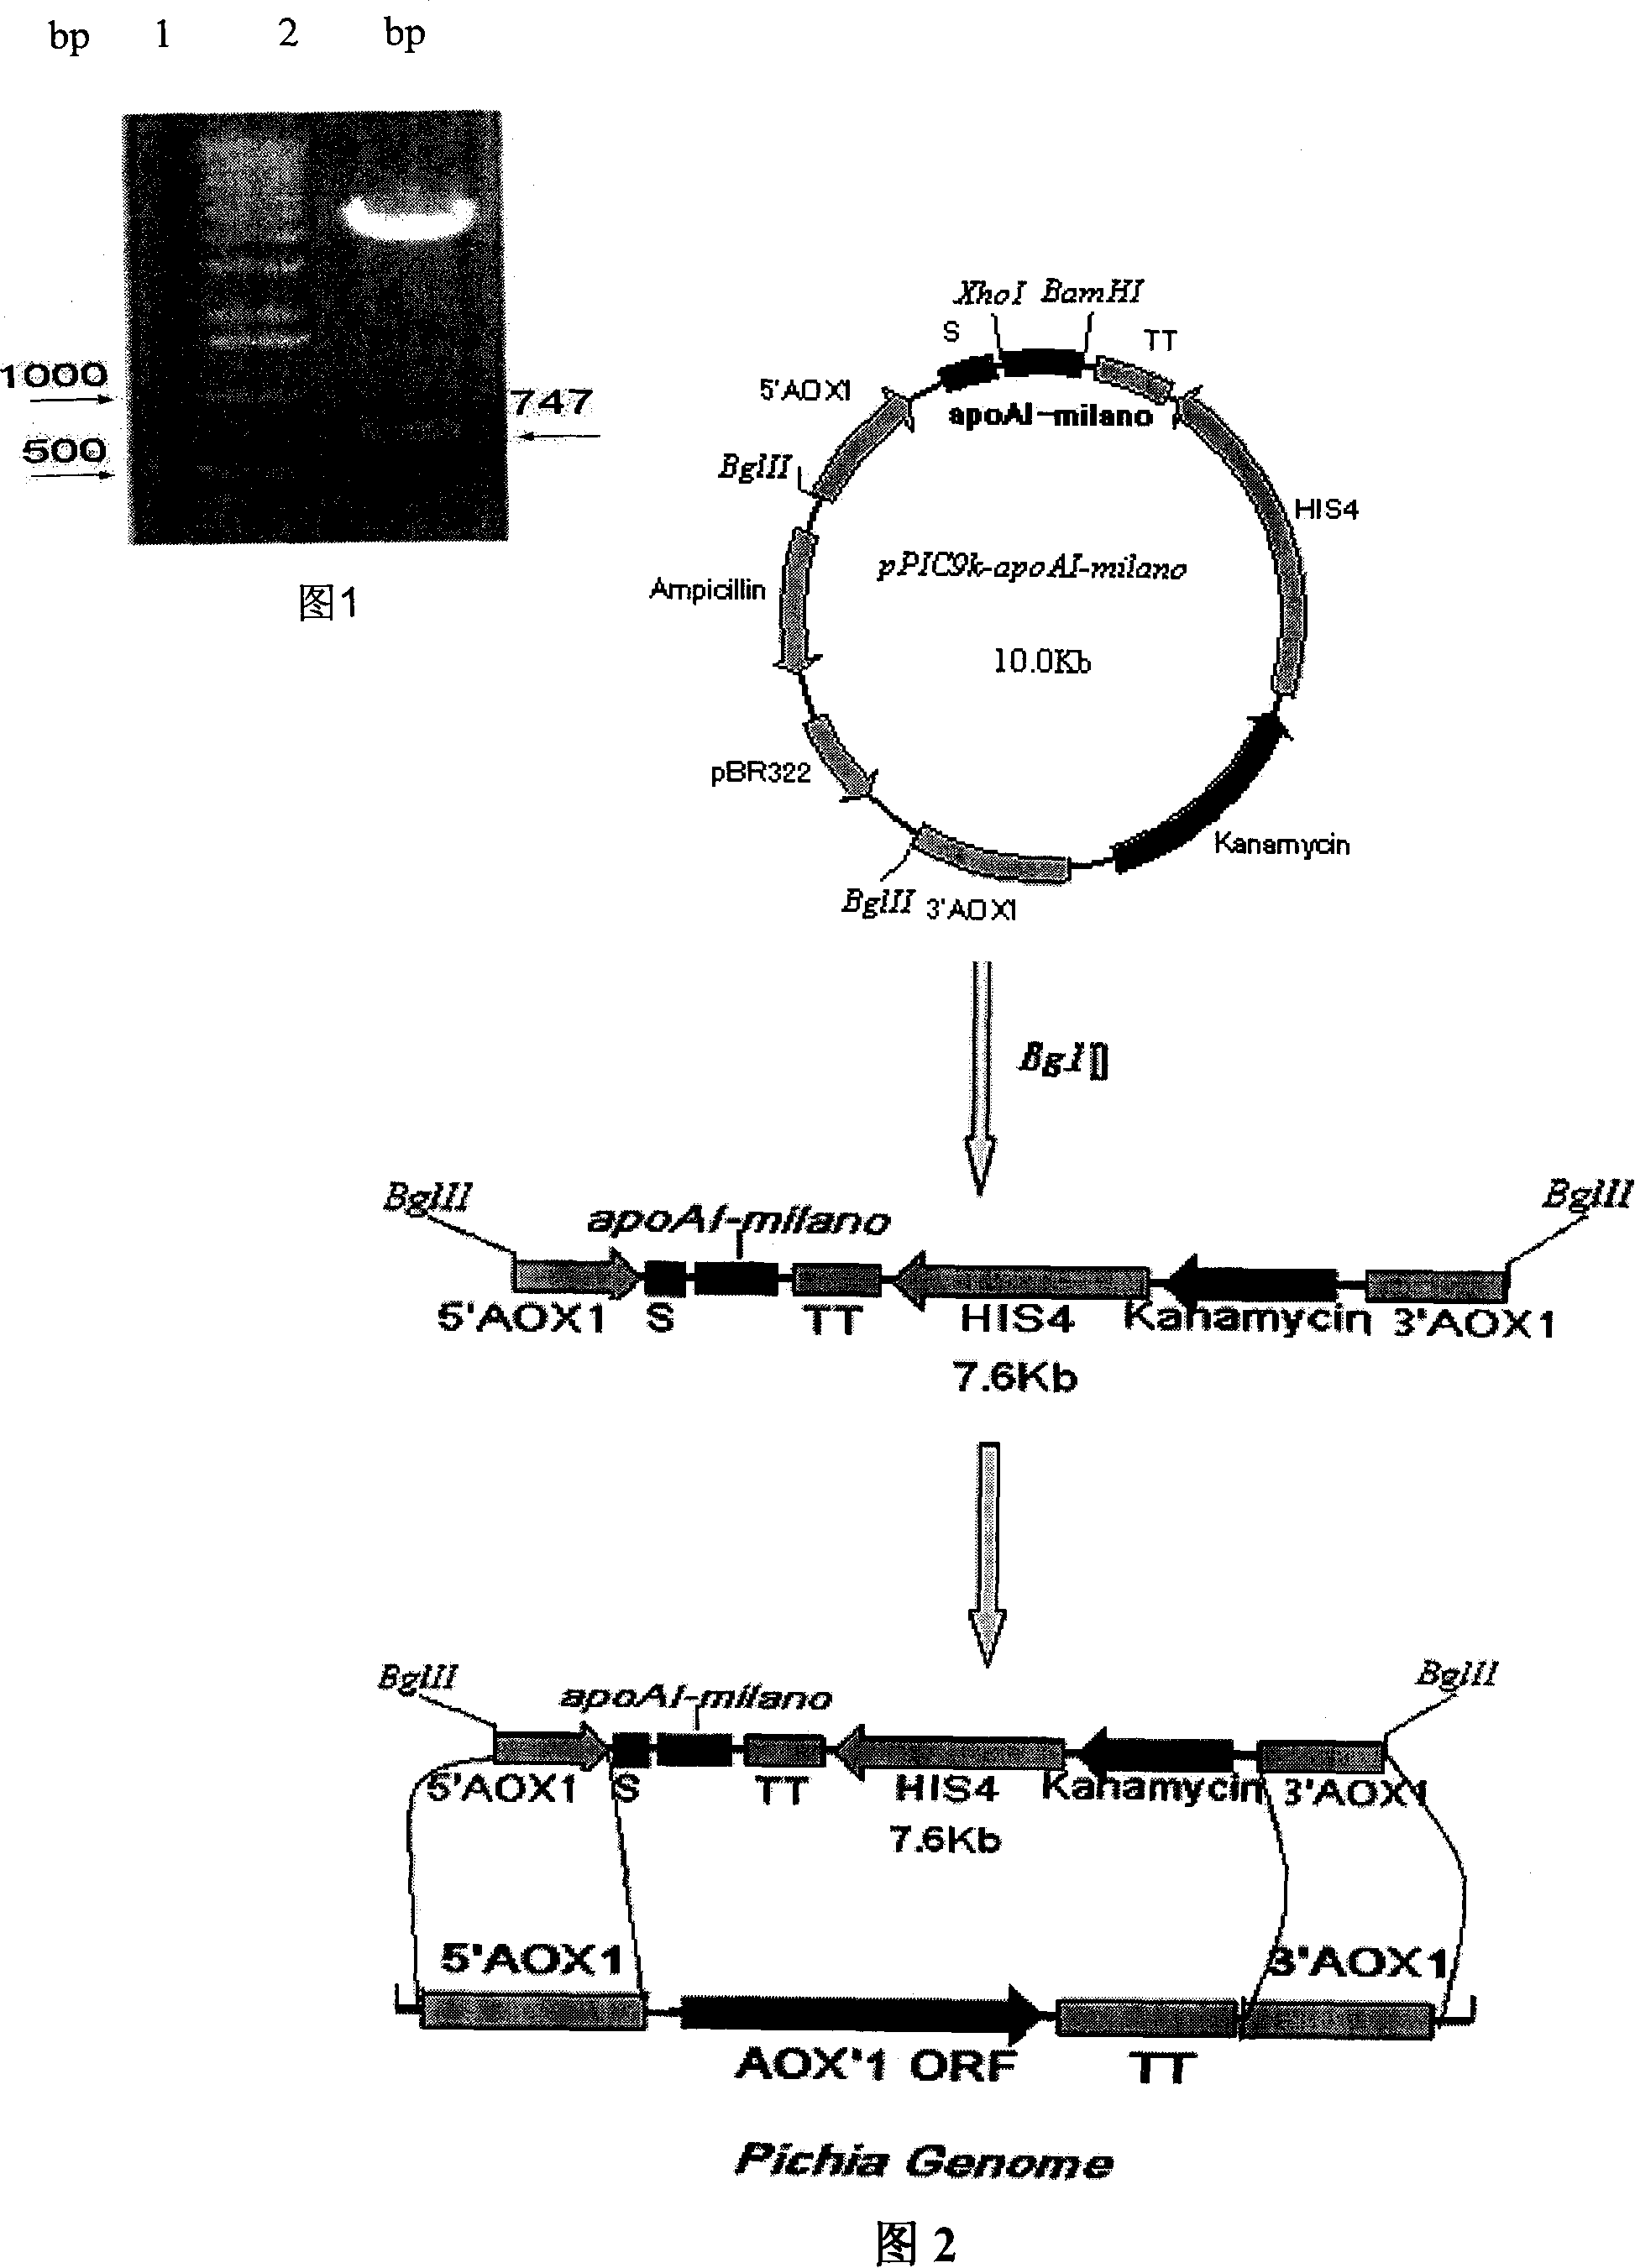 Expression method for recombination human apolipoprotein AI Milano variant in pichia pastoris